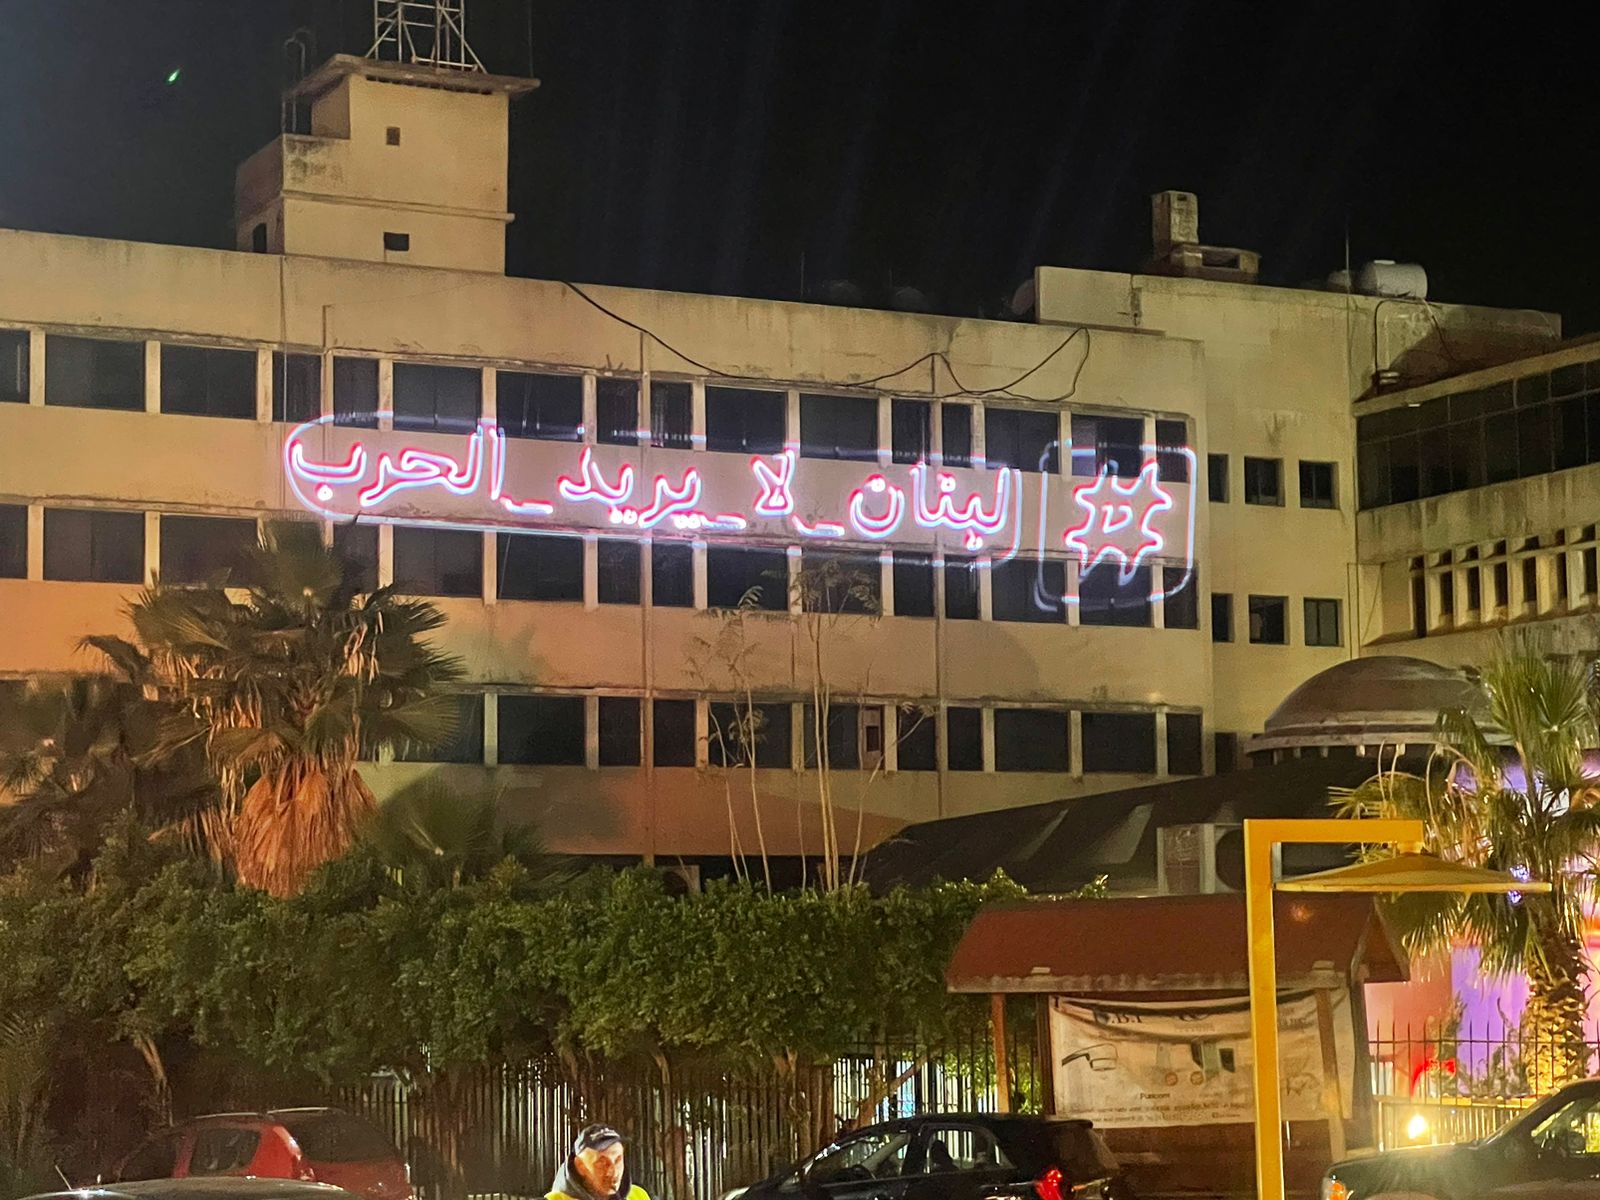 لبنان لا يريد الحرب! مبادرة ميلادية مميّزة في ساحة الدكوانة